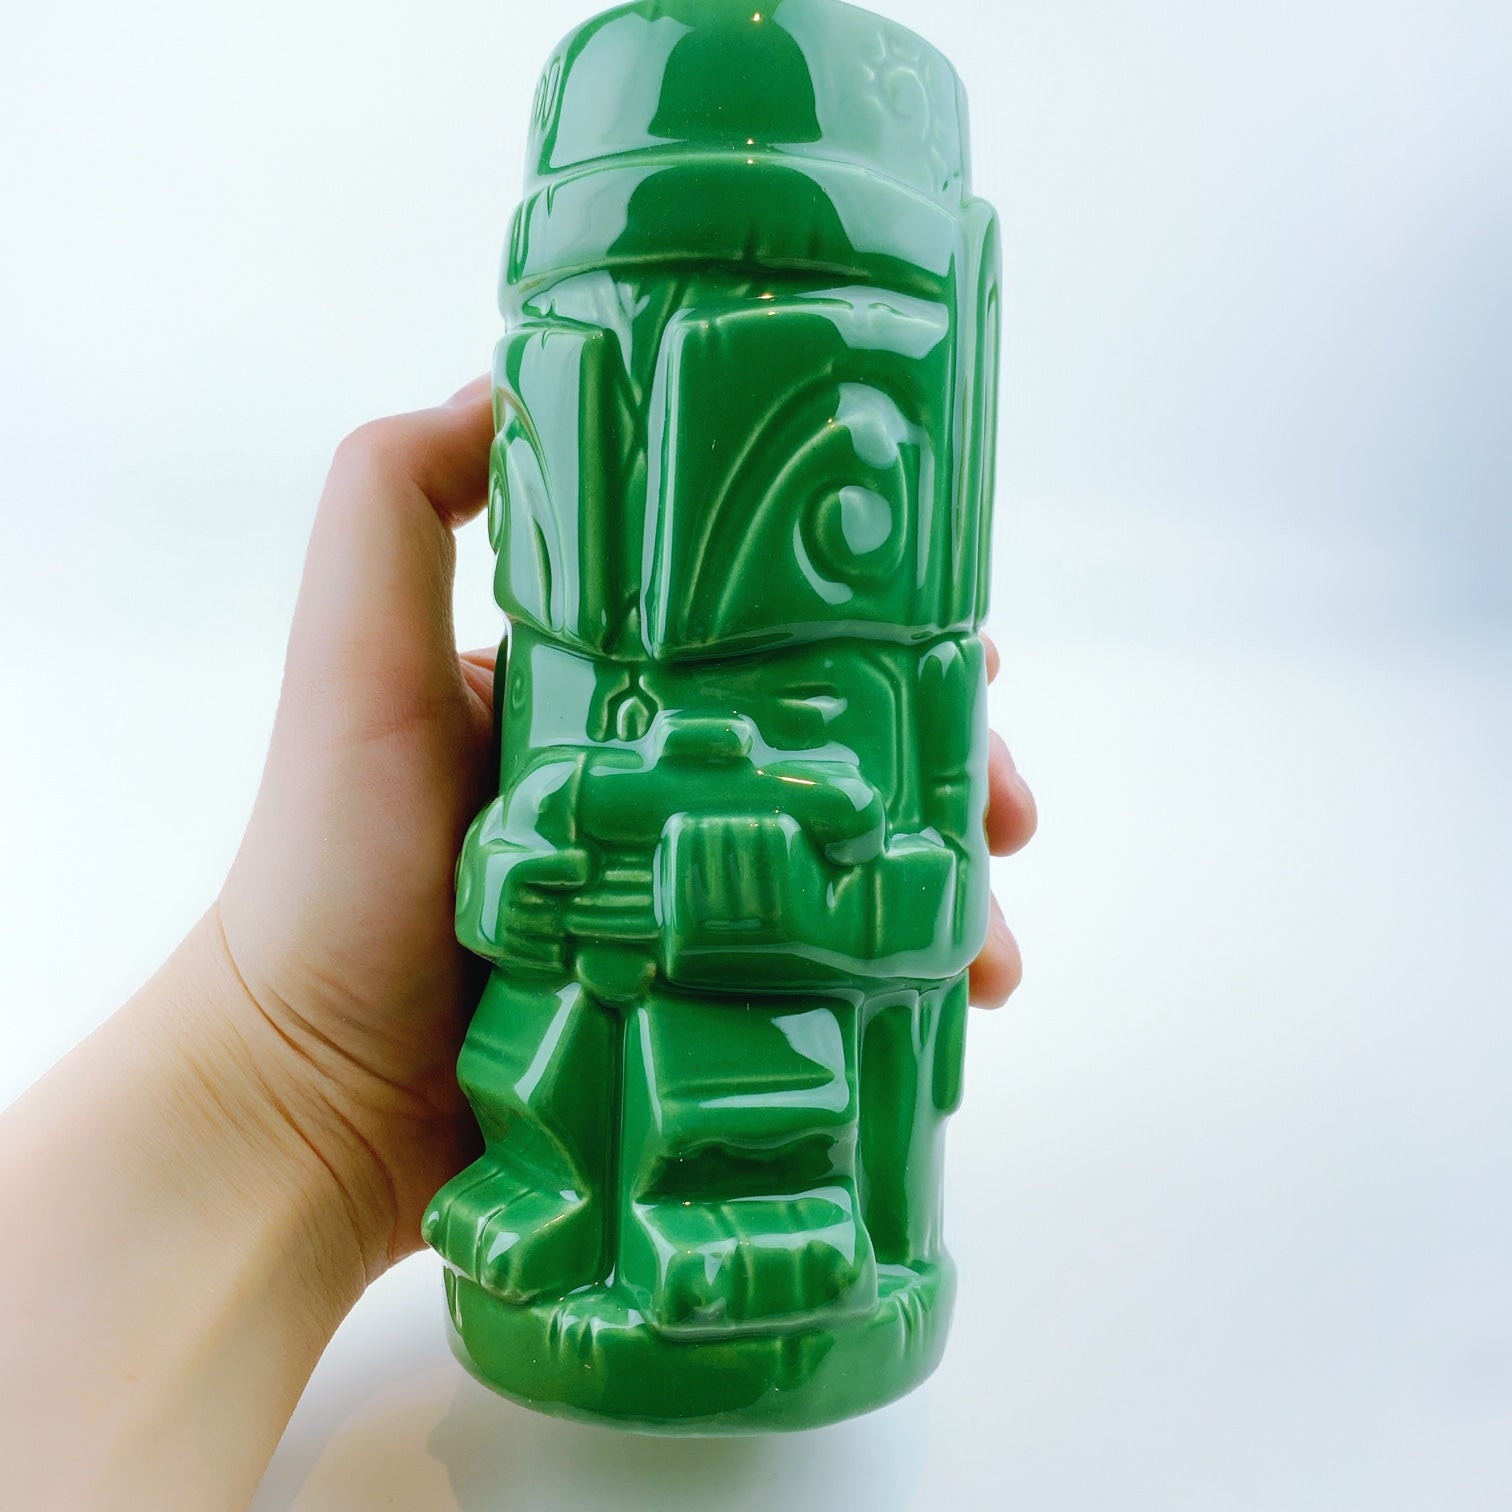 Star Wars Imperial Porcelain Mug Boba Fett